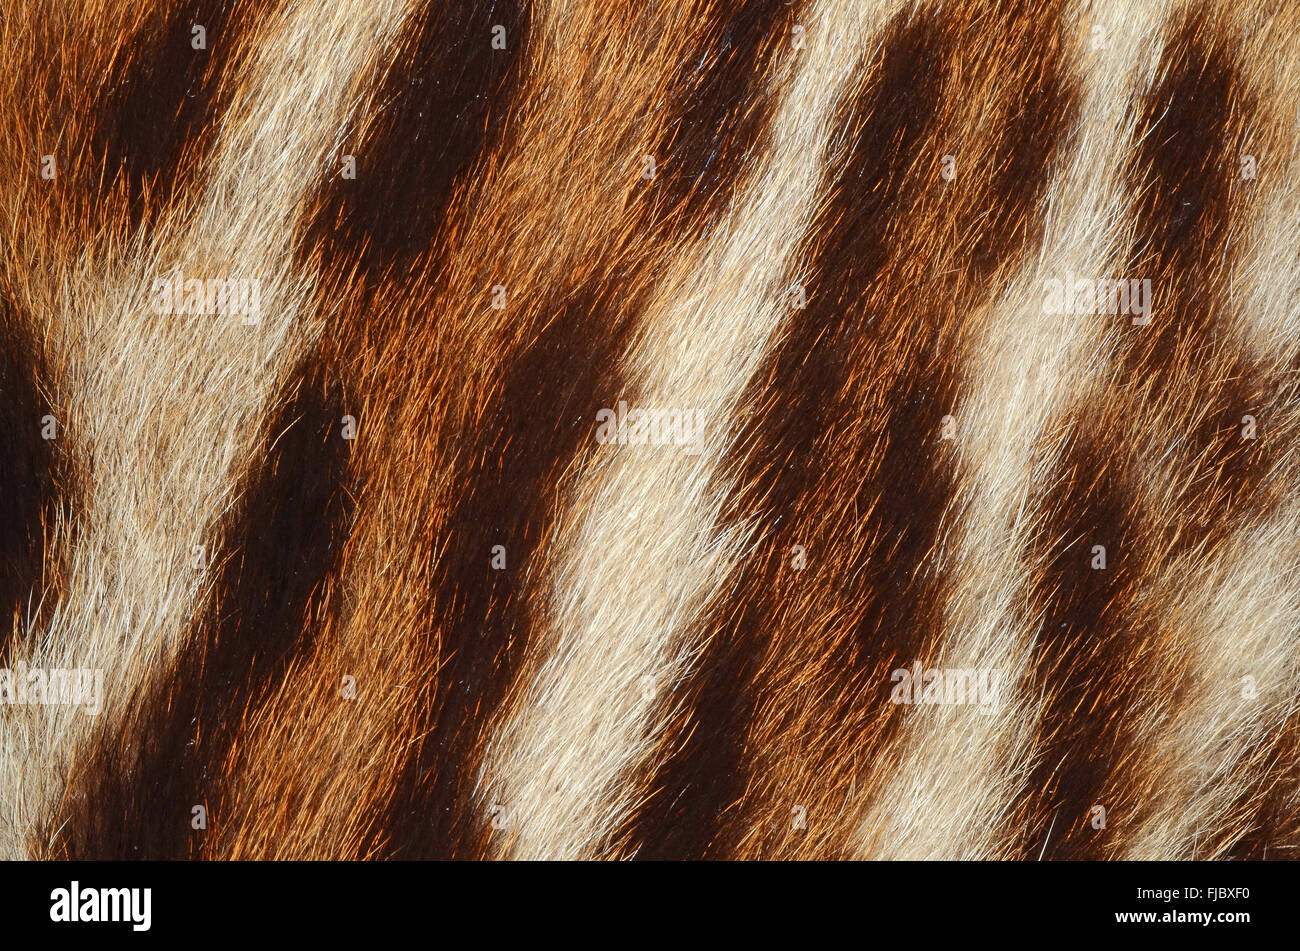 tiger fur texture Stock Photo